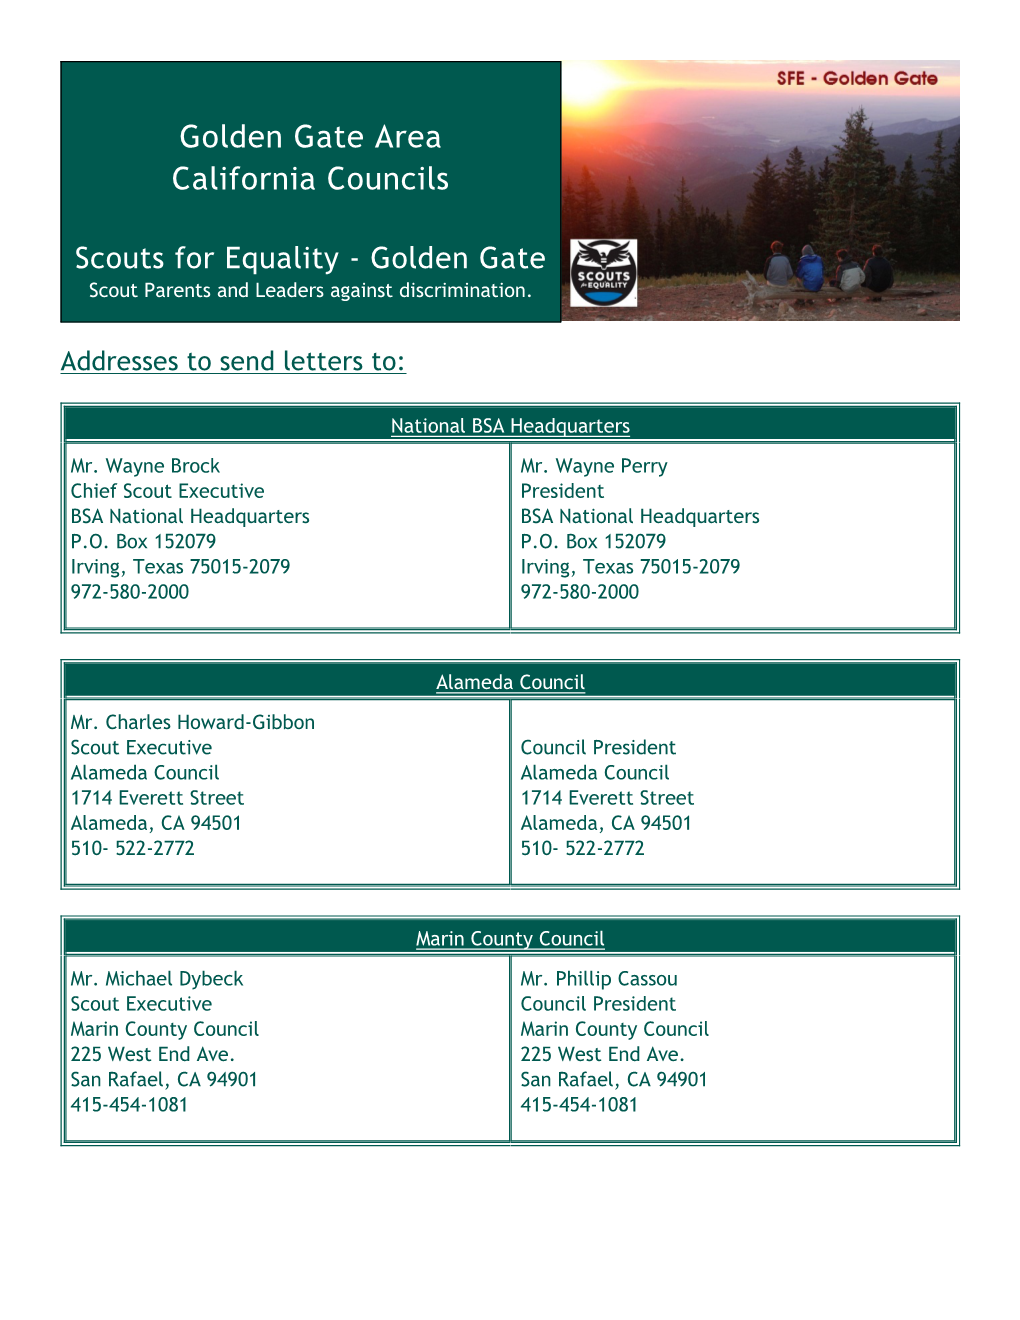 Golden Gate Area California Councils